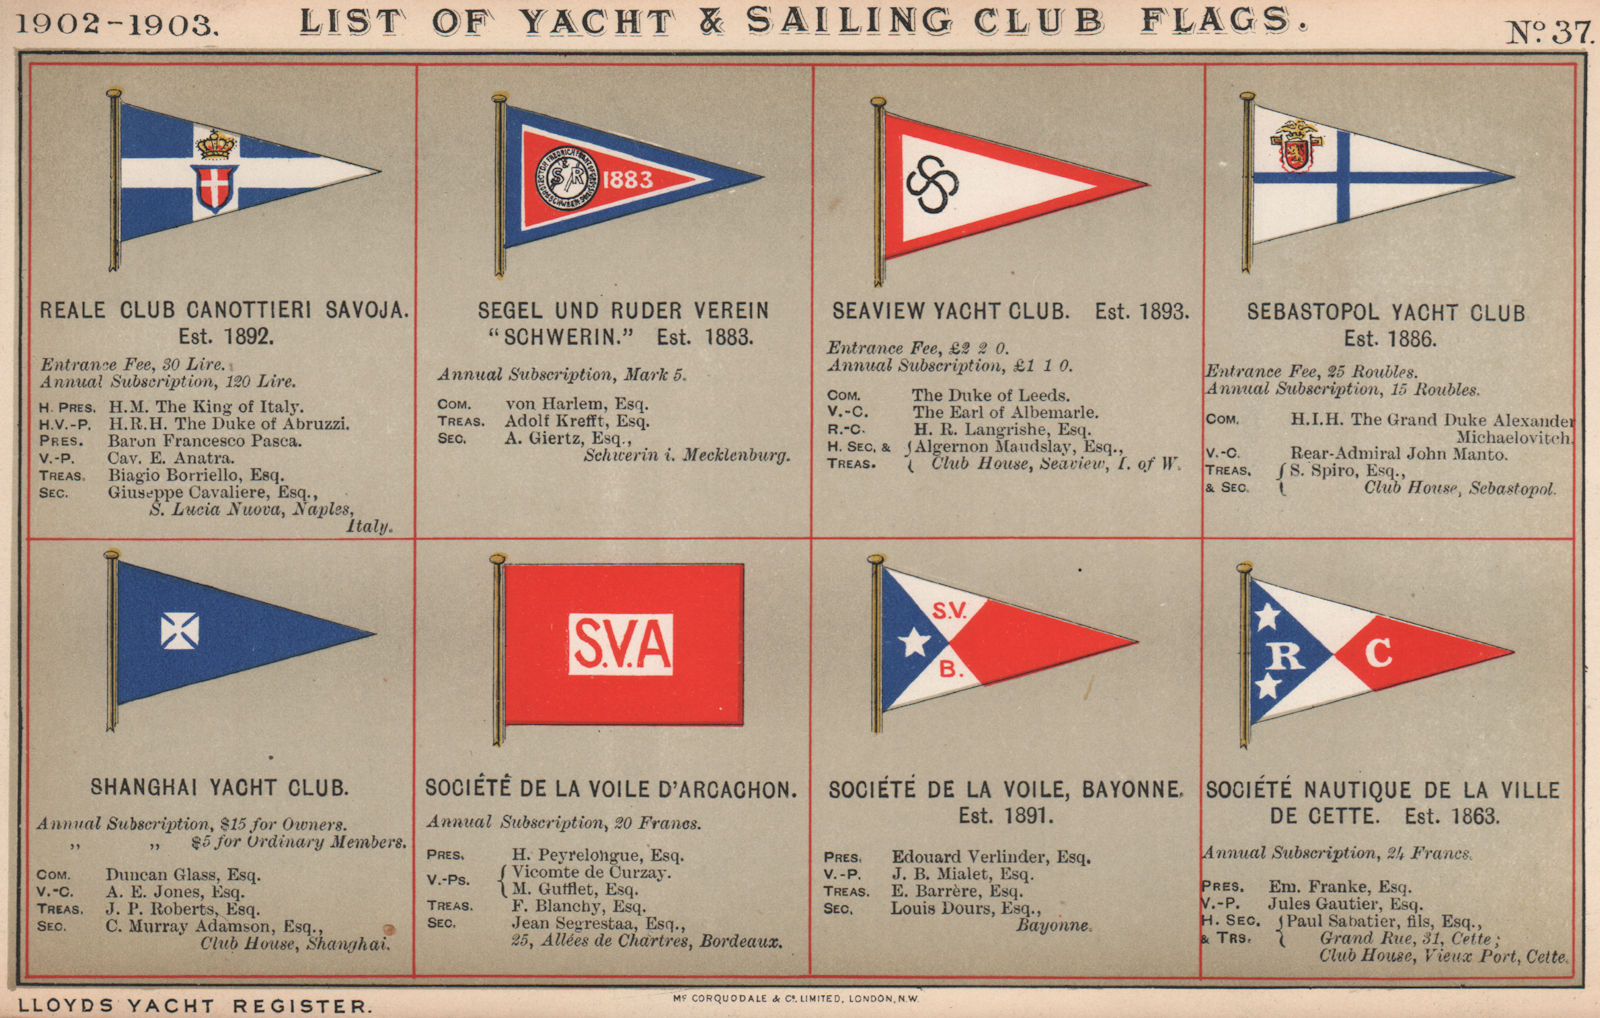 YACHT & SAILING CLUB FLAGS R-S. Reale club Canottieri Savoja-Société…Cette  1902